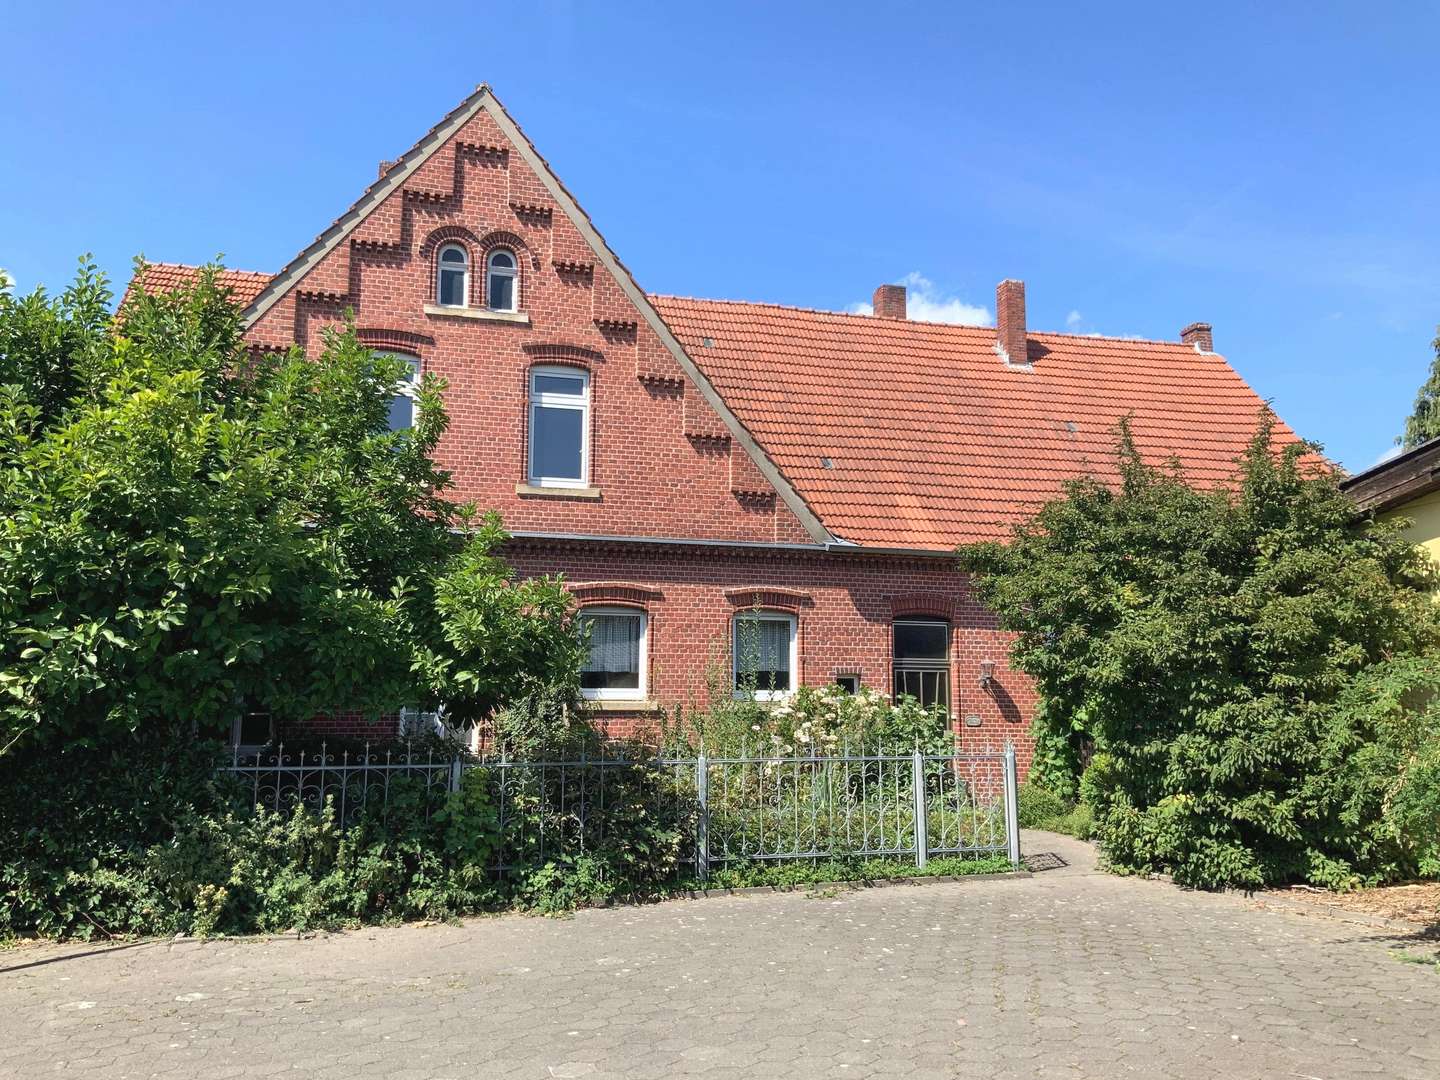 Wohn- und Geschäftshaus - Grundstück in 48720 Rosendahl mit 4207m² kaufen